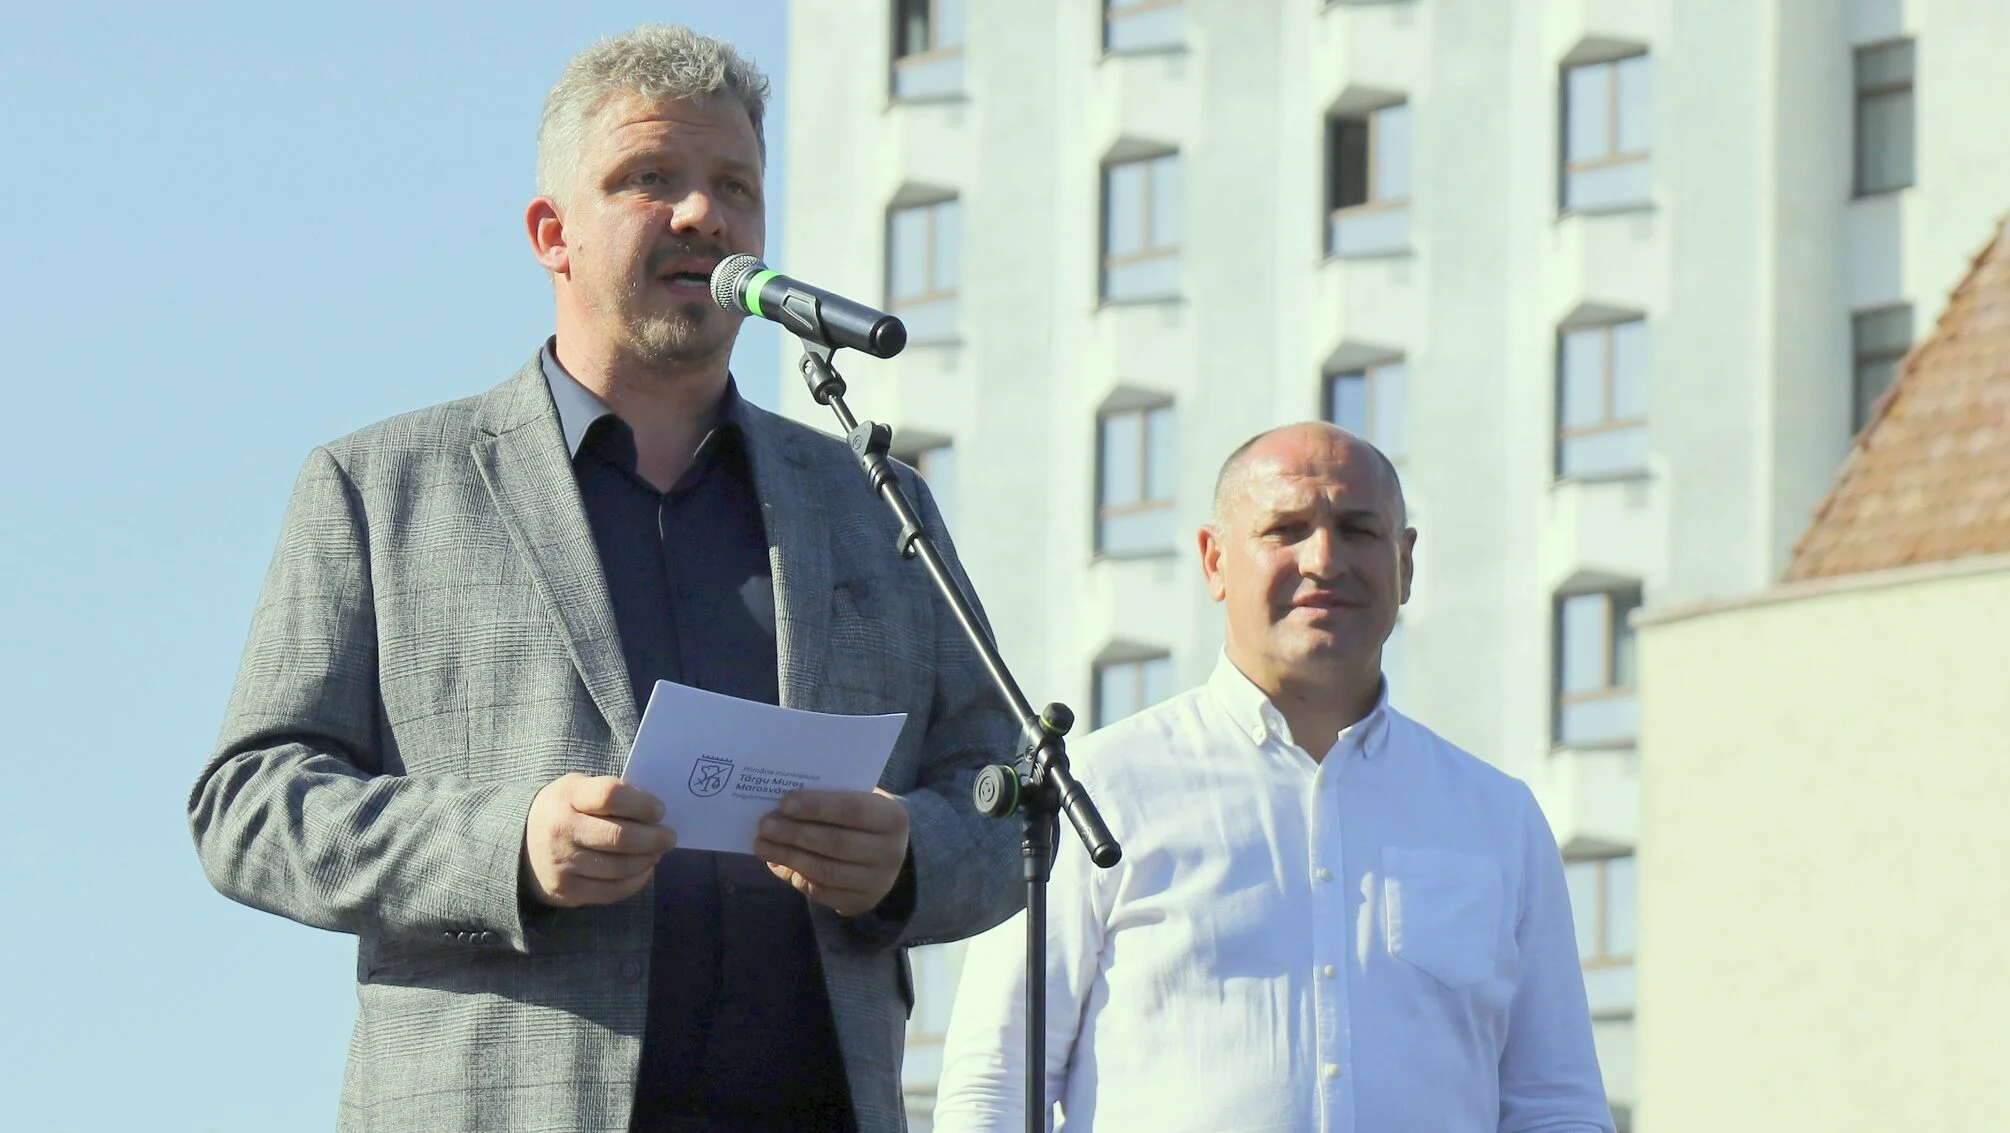 Soós Zoltán rămâne primar la Târgu Mureș: „A trebuit să lupt nu doar cu marionete”